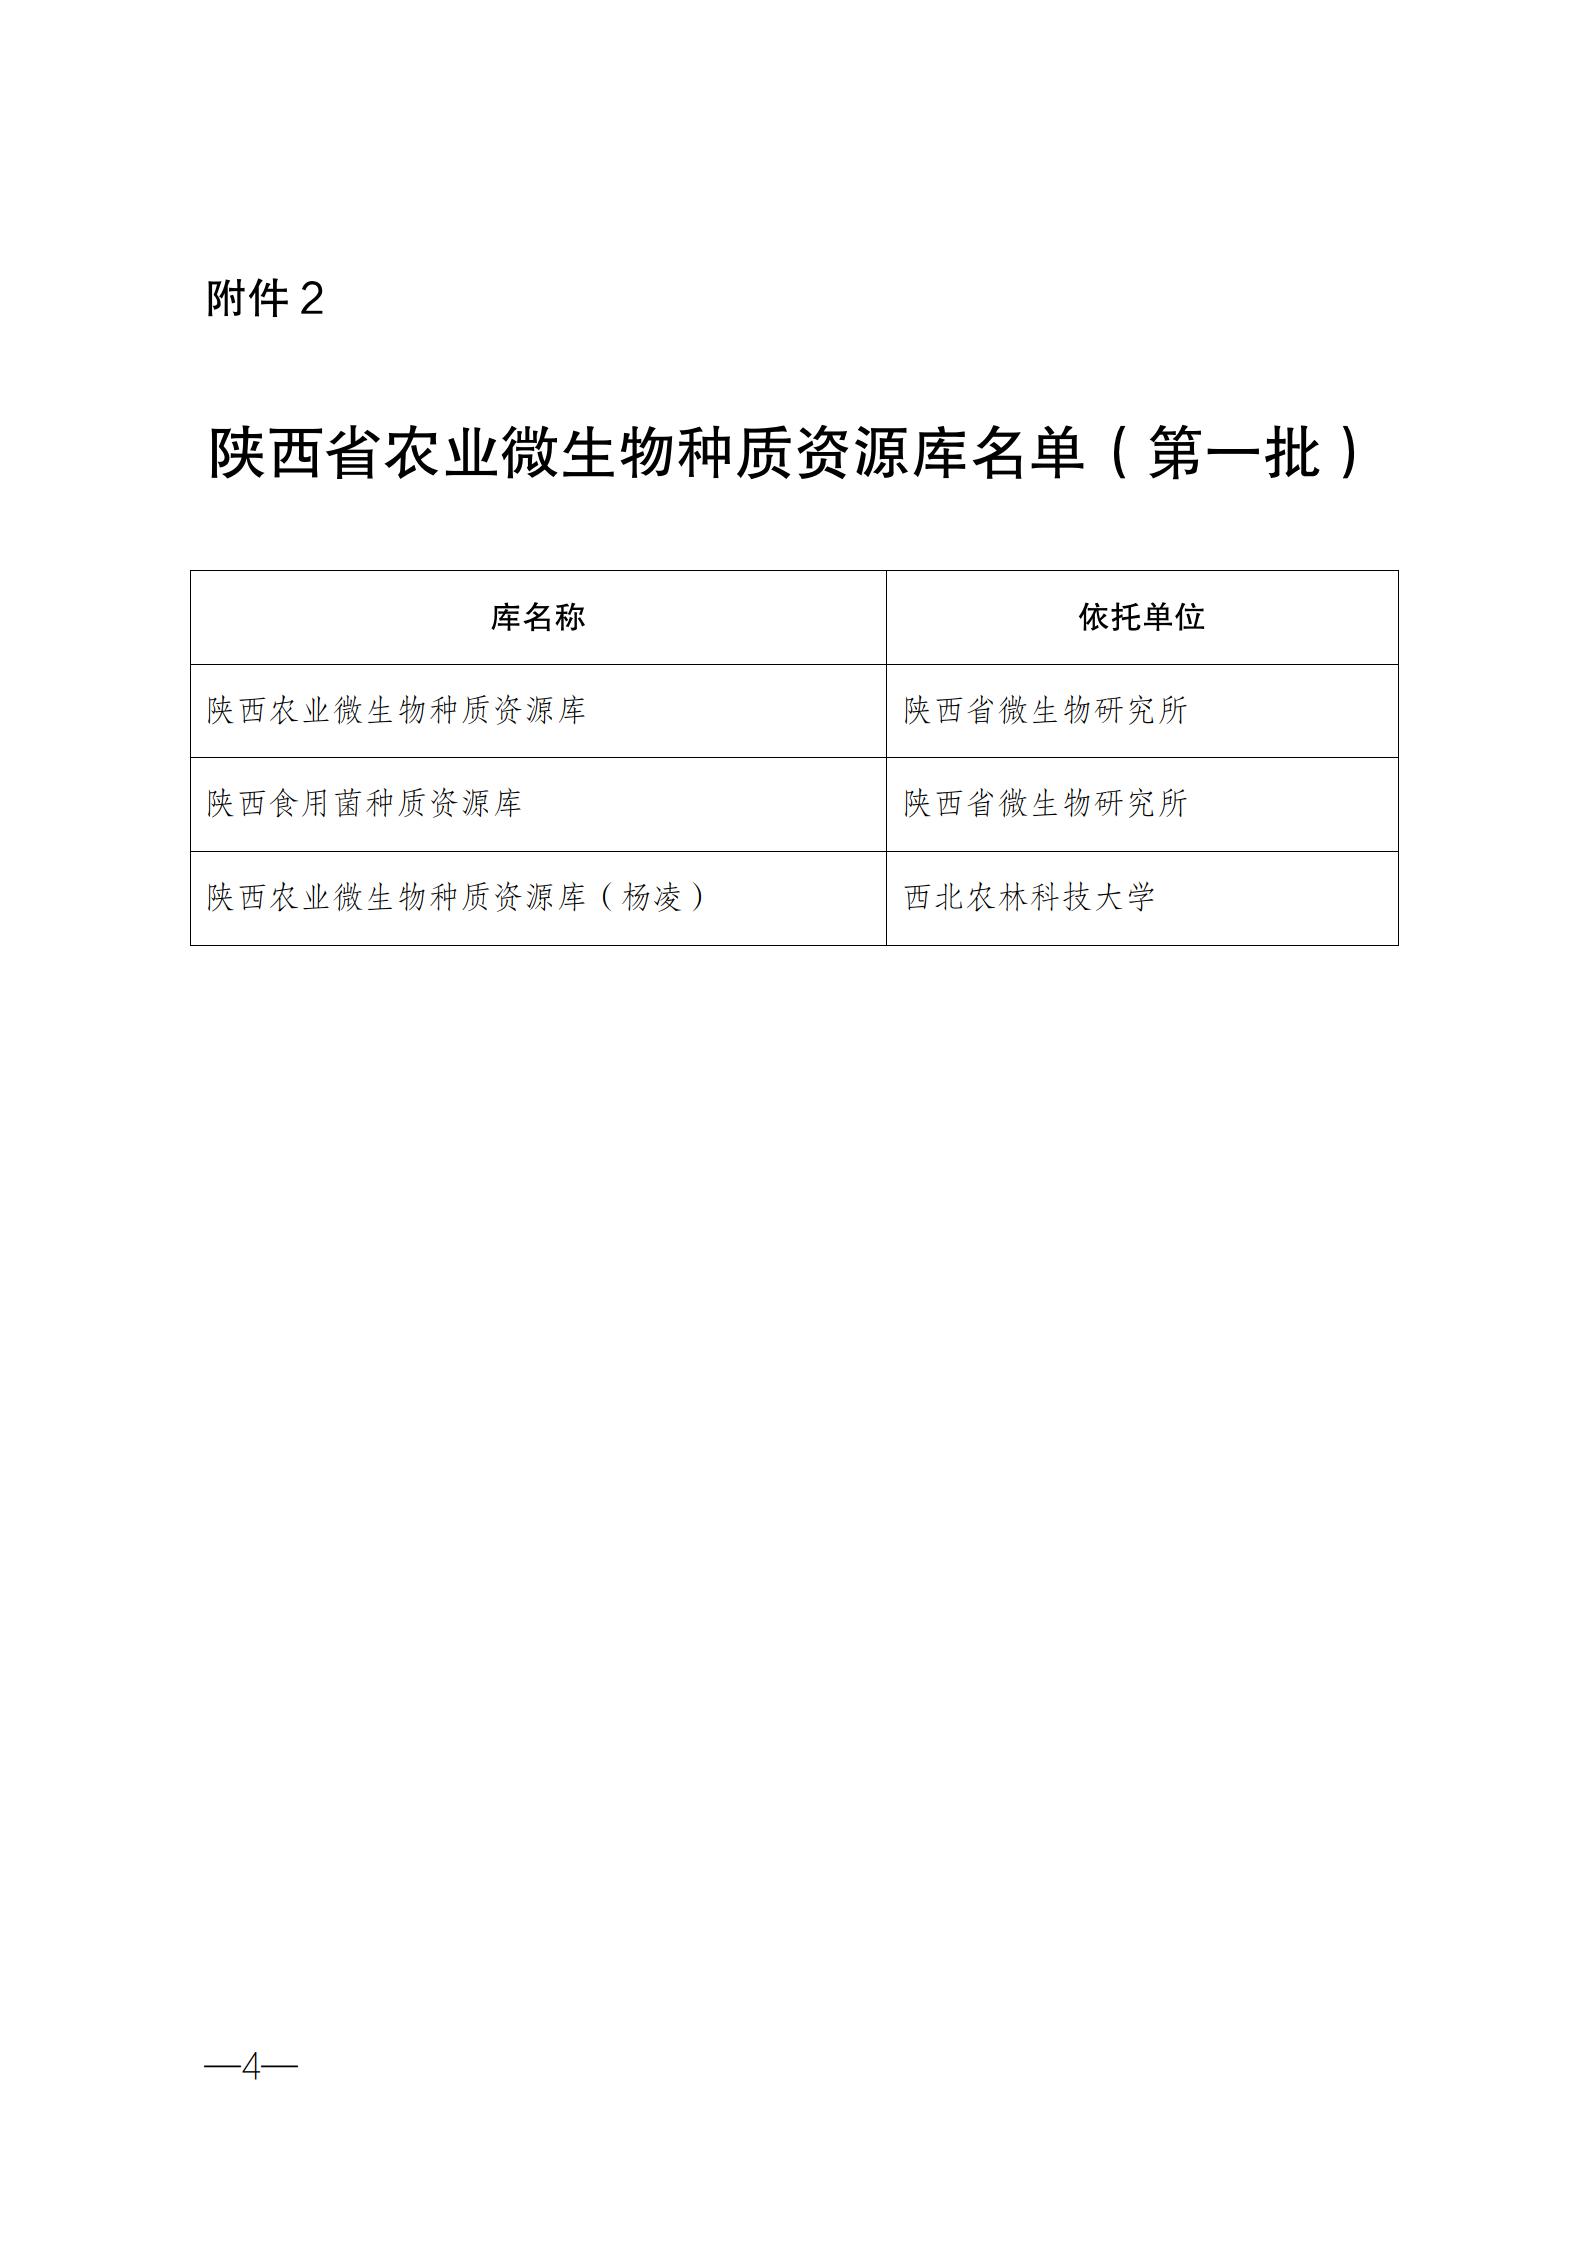 陕西省农业农村厅%0A关于公布第一批省级农业种质资源%0A保护单位名单的公告_04.jpg